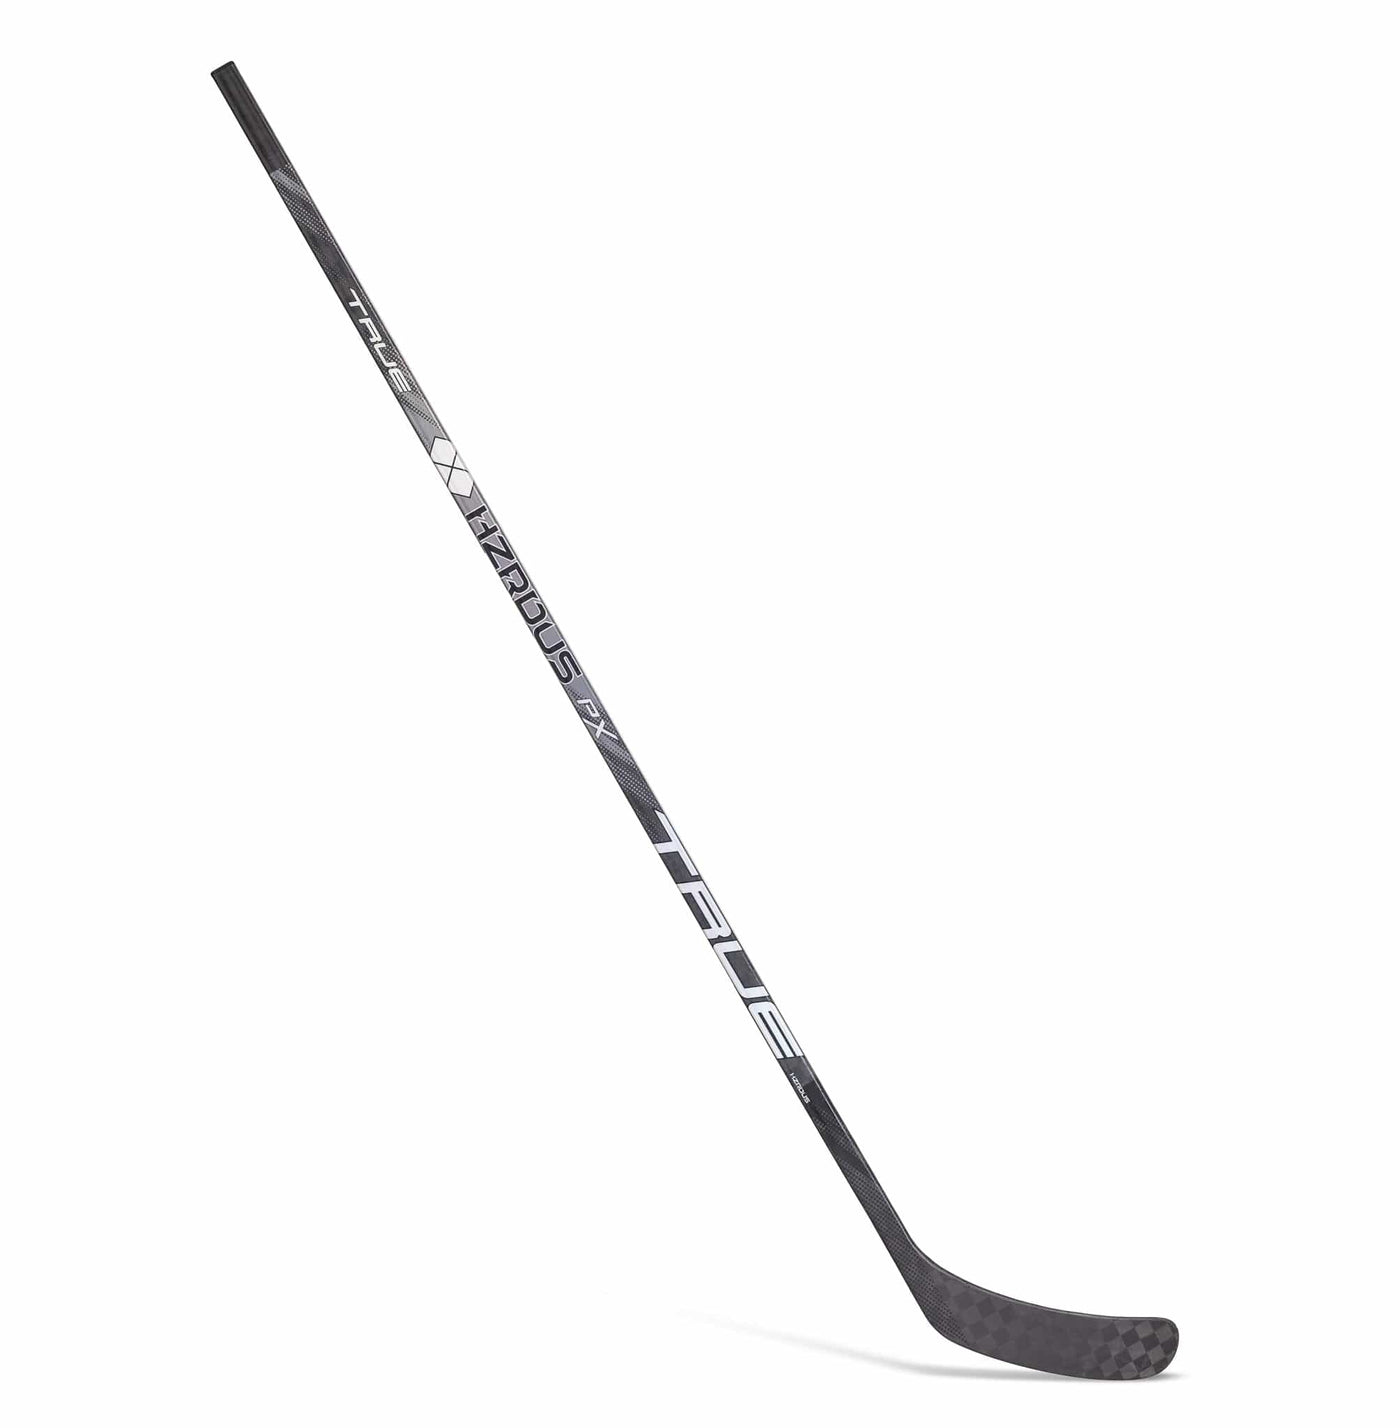 True HZRDUS PX Pro Stock Senior Hockey Stick - Steven Stamkos - TheHockeyShop.com